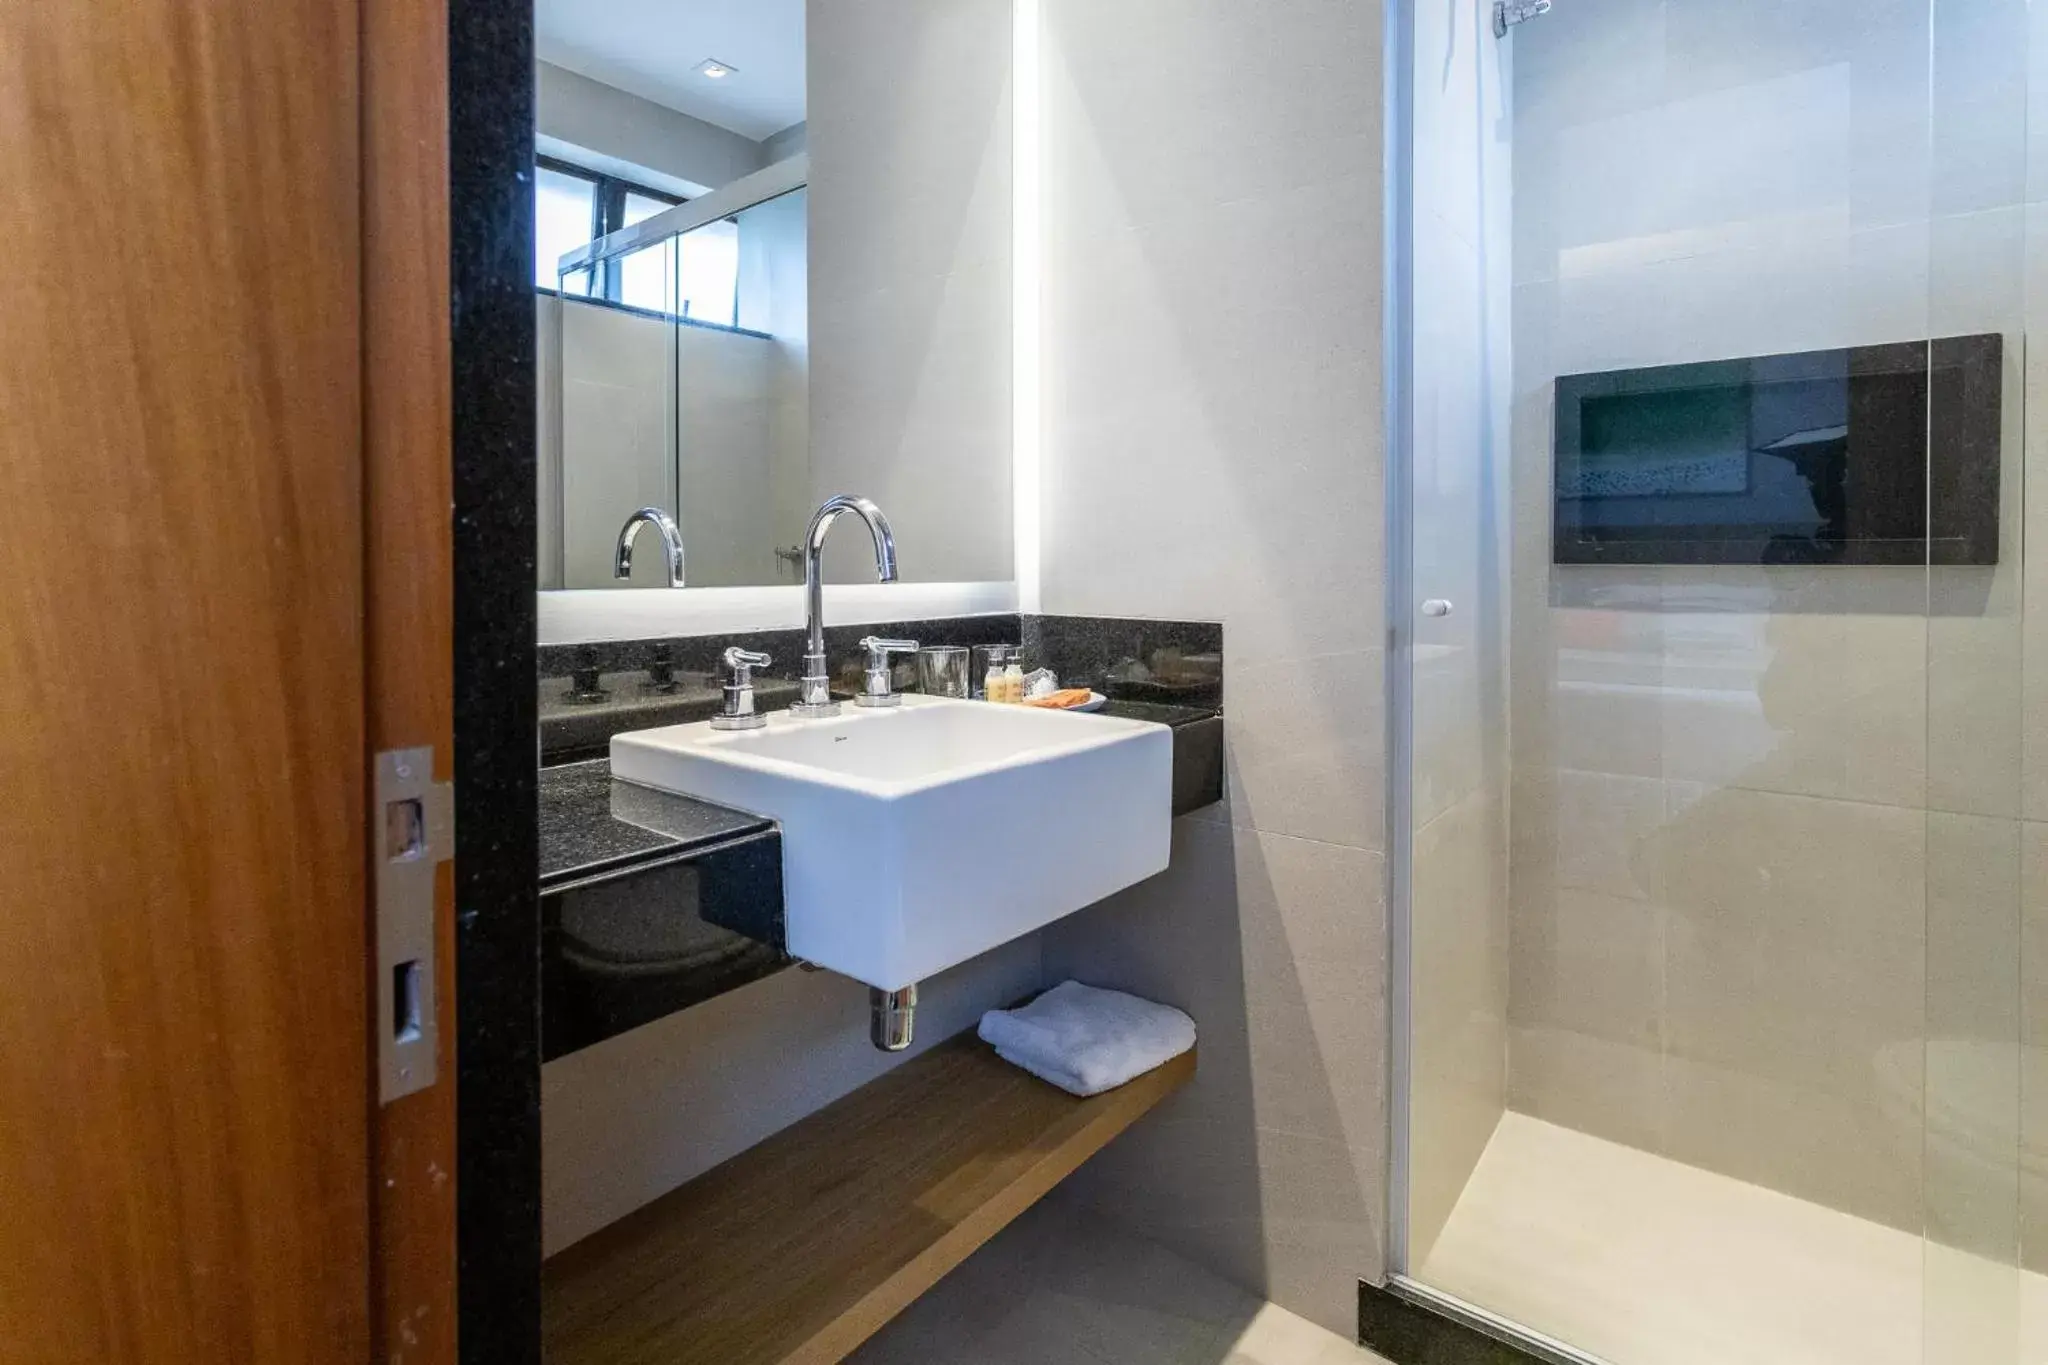 Shower, Bathroom in Mar Ipanema Hotel